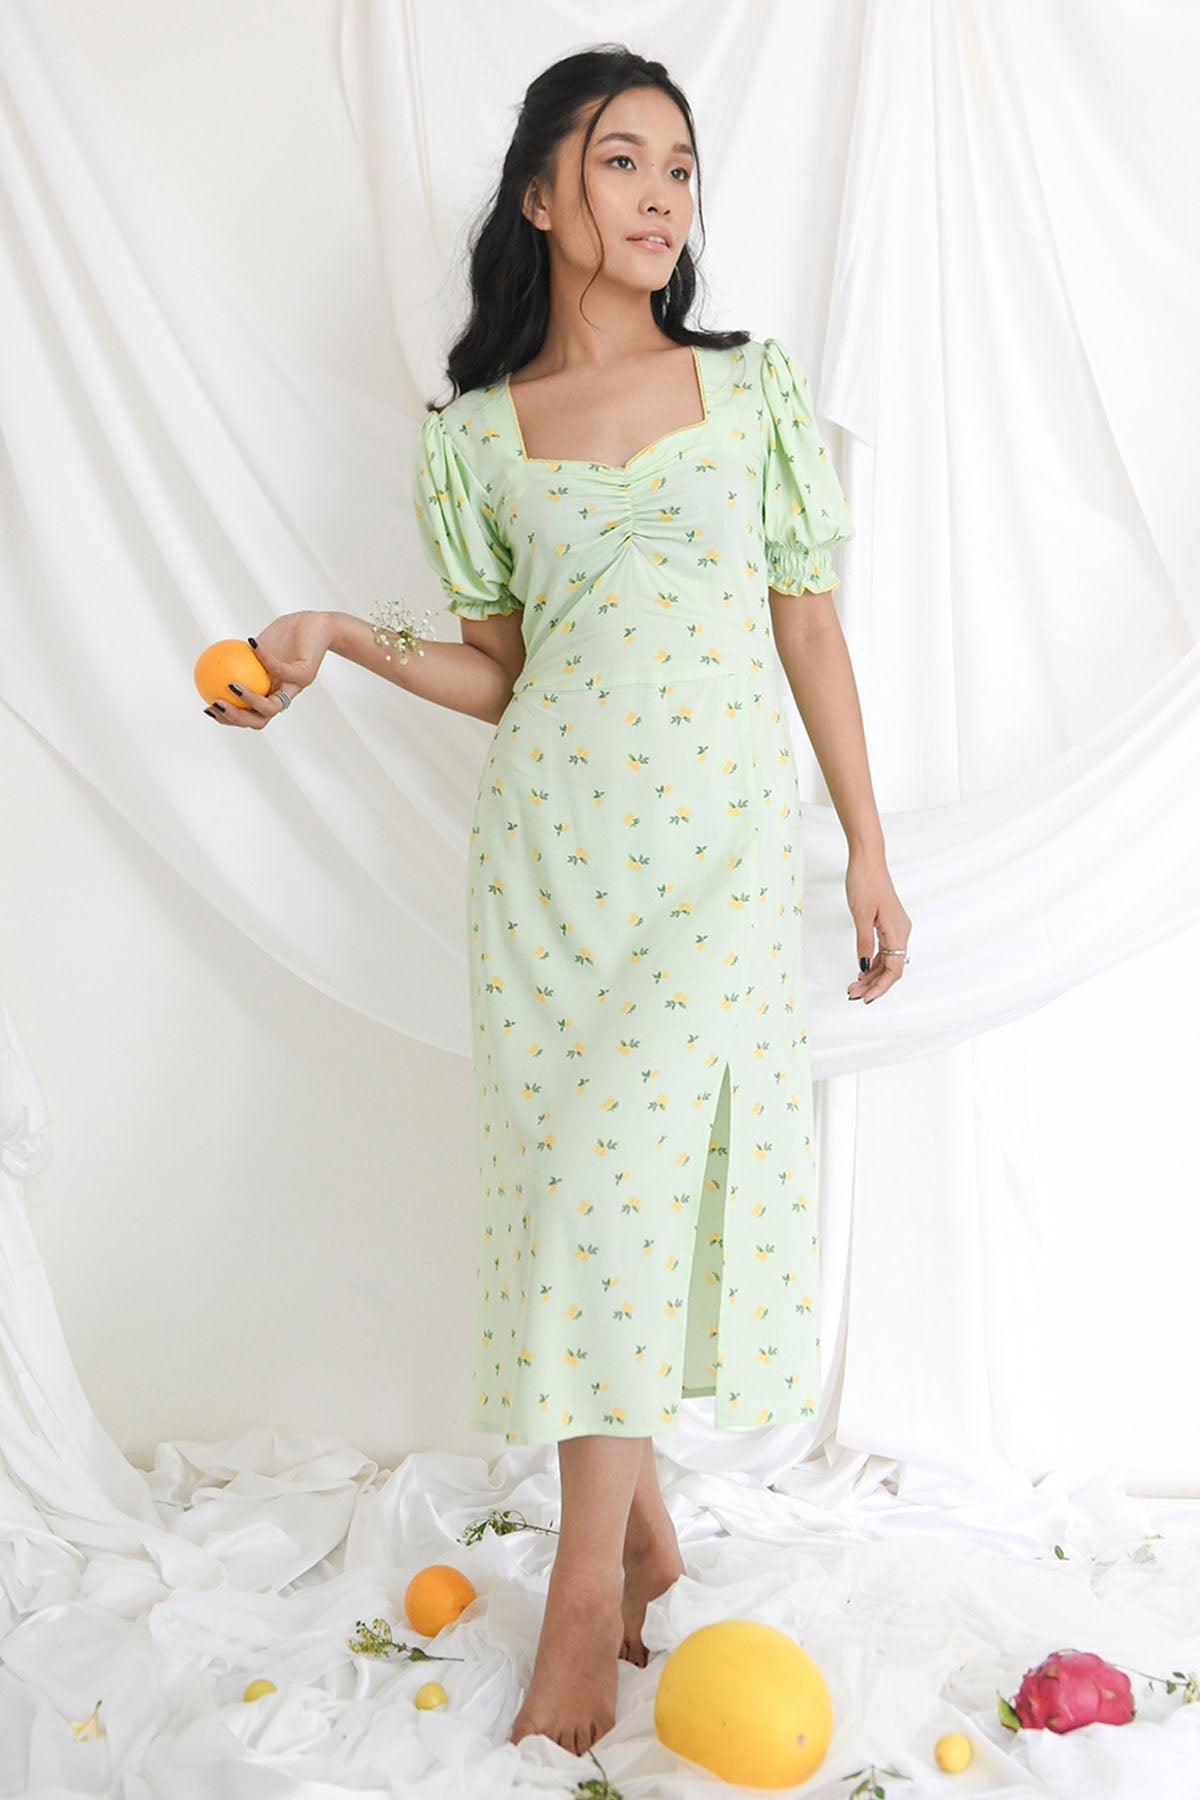 Bohobi Mint Cotton Side Slit Dress For Women Online at ScrollnShops